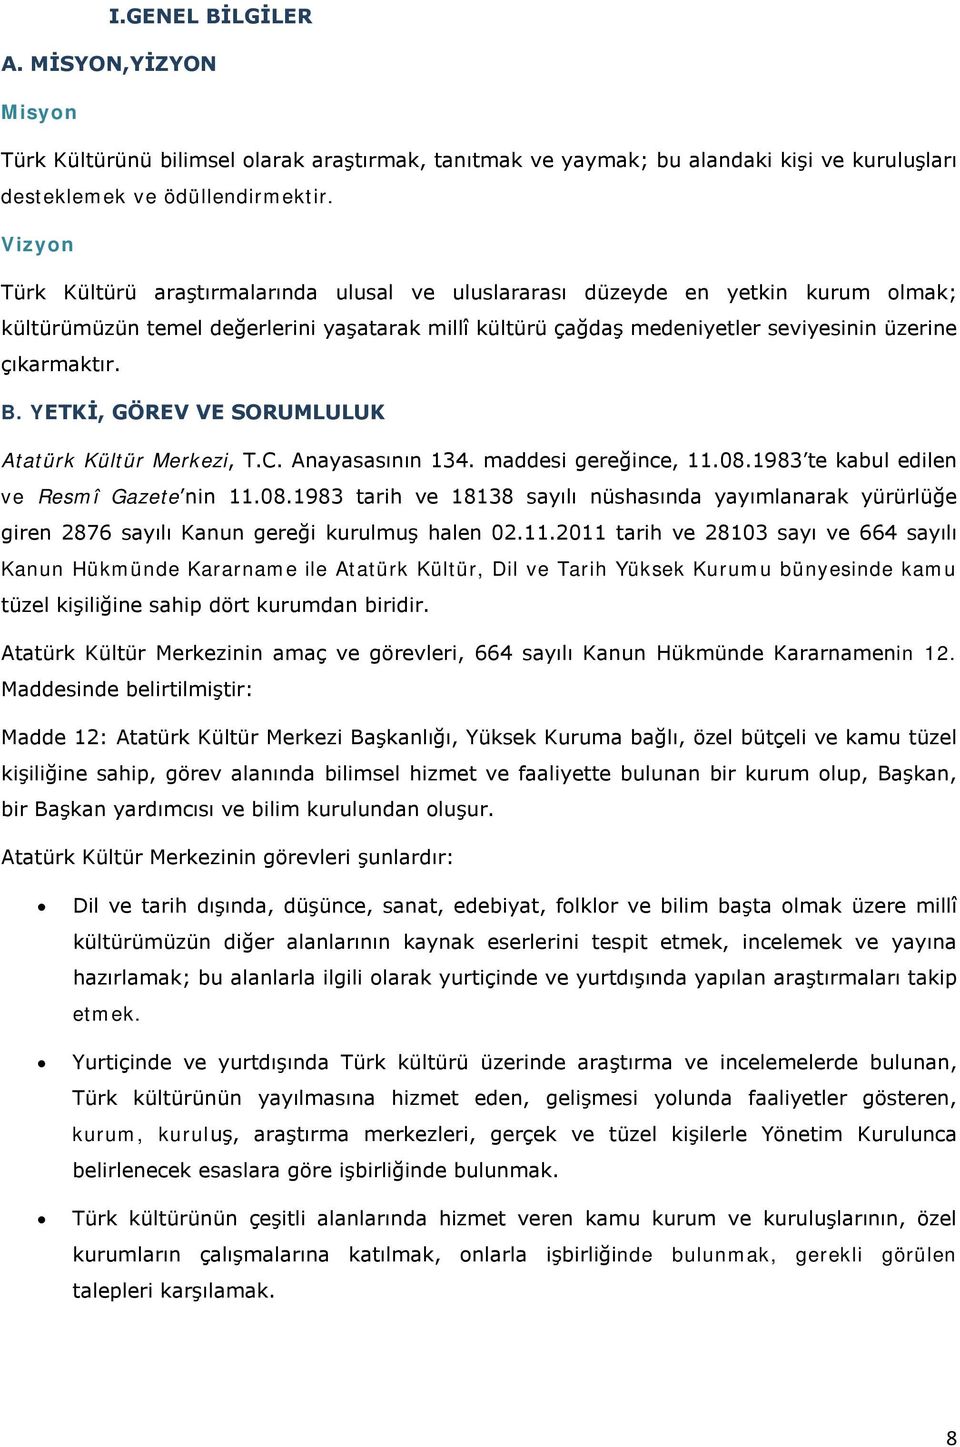 B. YETKİ, GÖREV VE SORUMLULUK Atatürk Kültür Merkezi, T.C. Anayasasının 134. maddesi gereğince, 11.08.